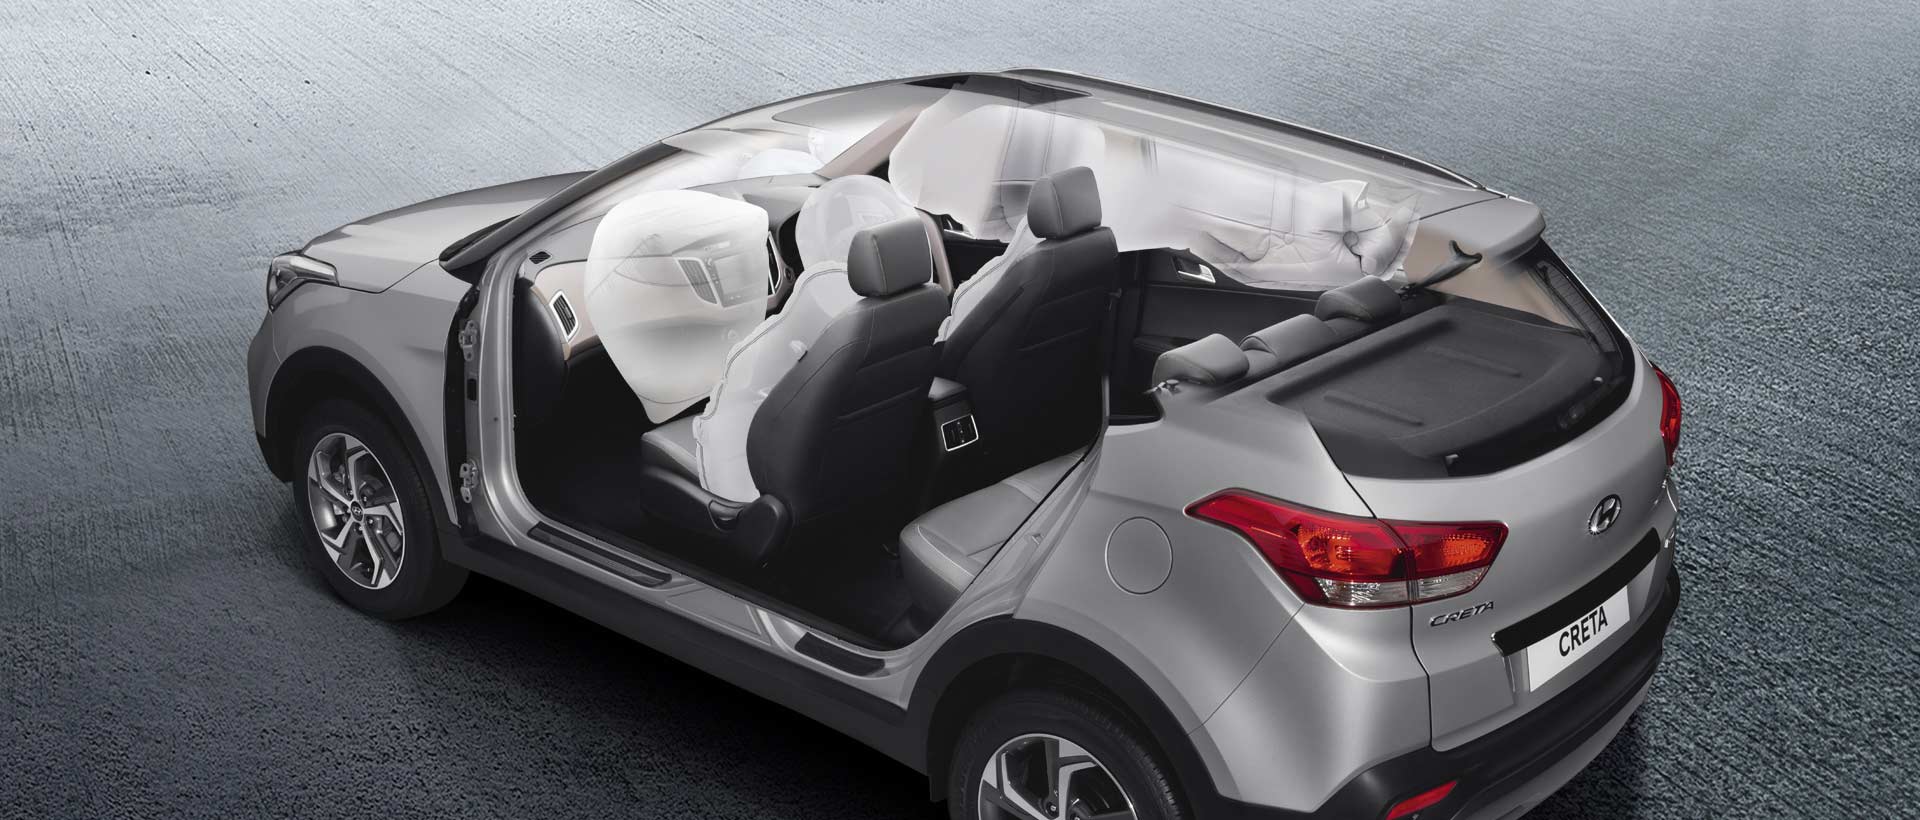 2018-Hyundai-Creta-facelift-interior-safety